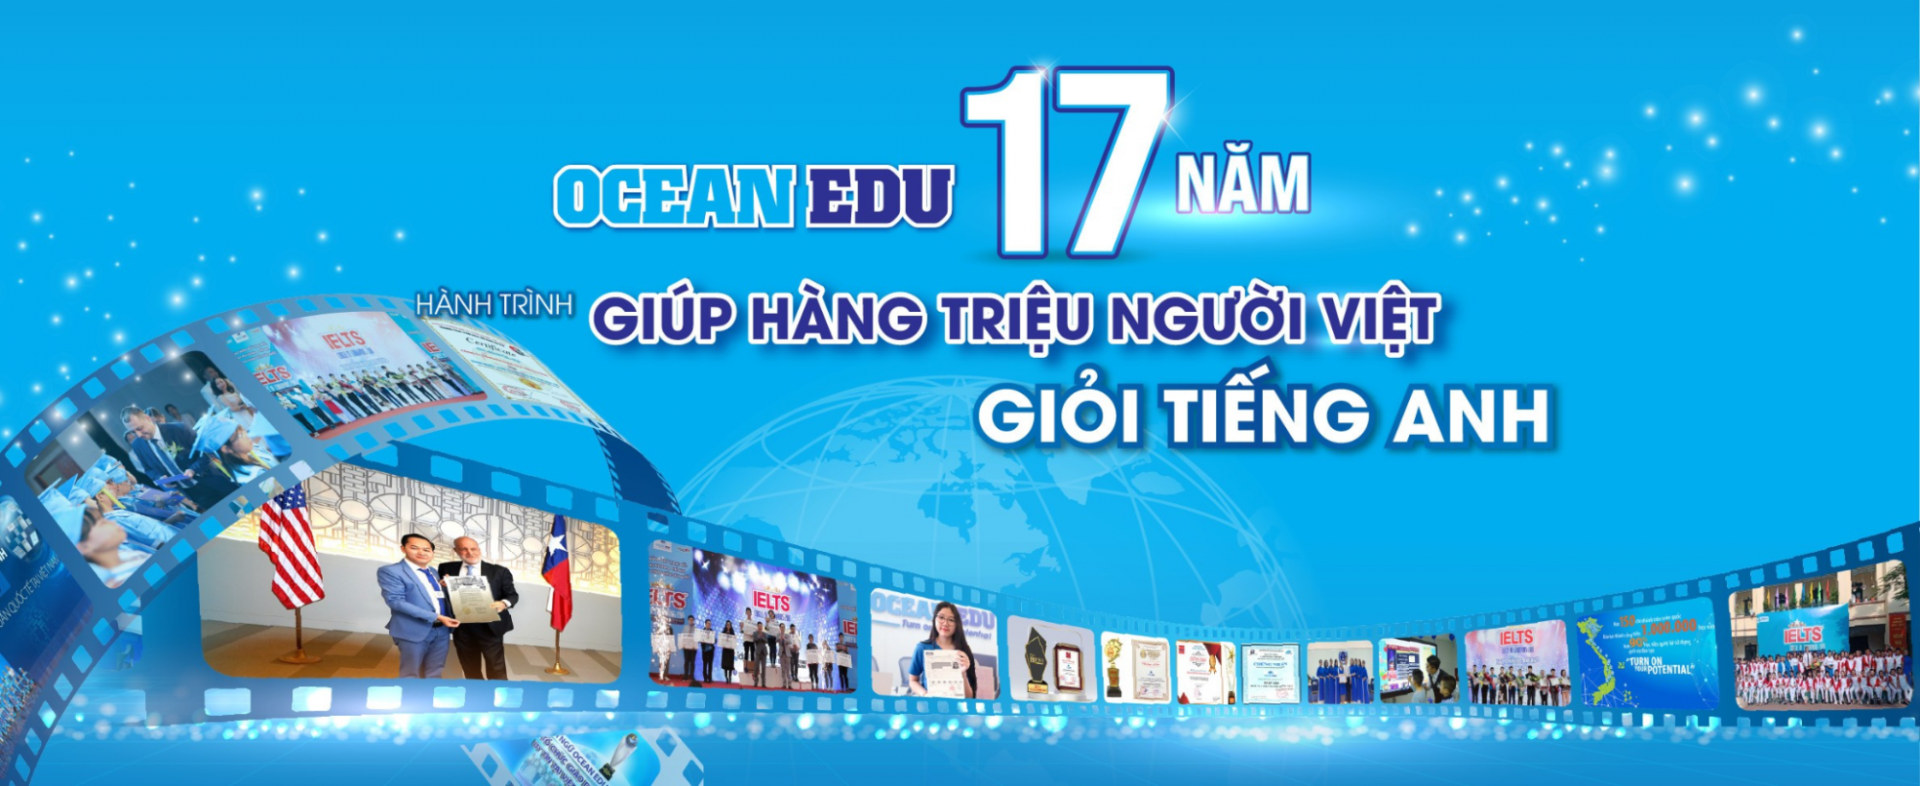 Ocean Edu - Hành trình 17 năm giúp hàng triệu người Việt giỏi tiếng anh